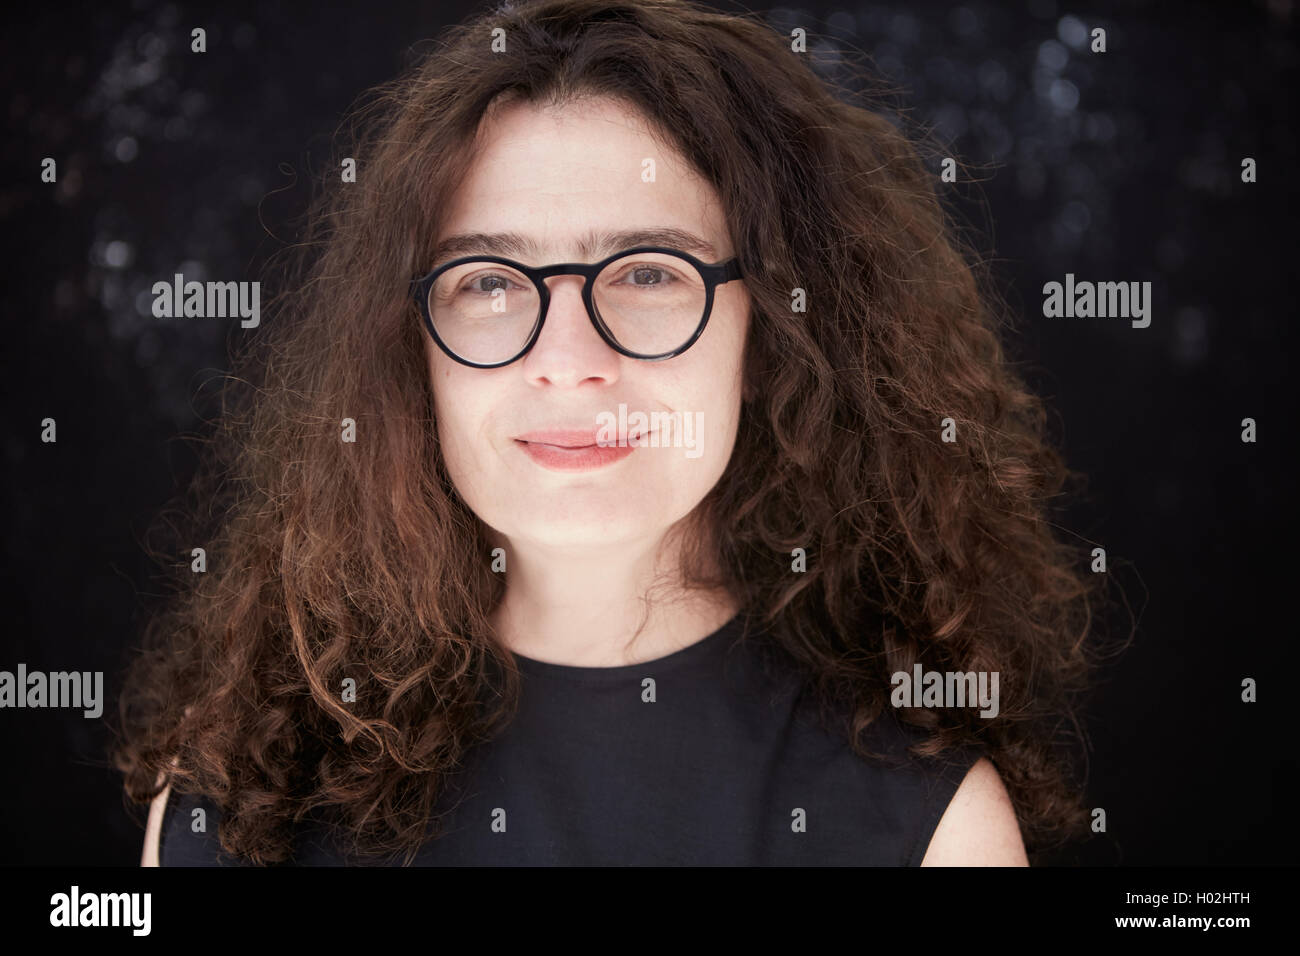 Arsinée Khanjian, actrice et productrice de cinéma, vu au cours de festival en Italie en juillet 2016 Banque D'Images